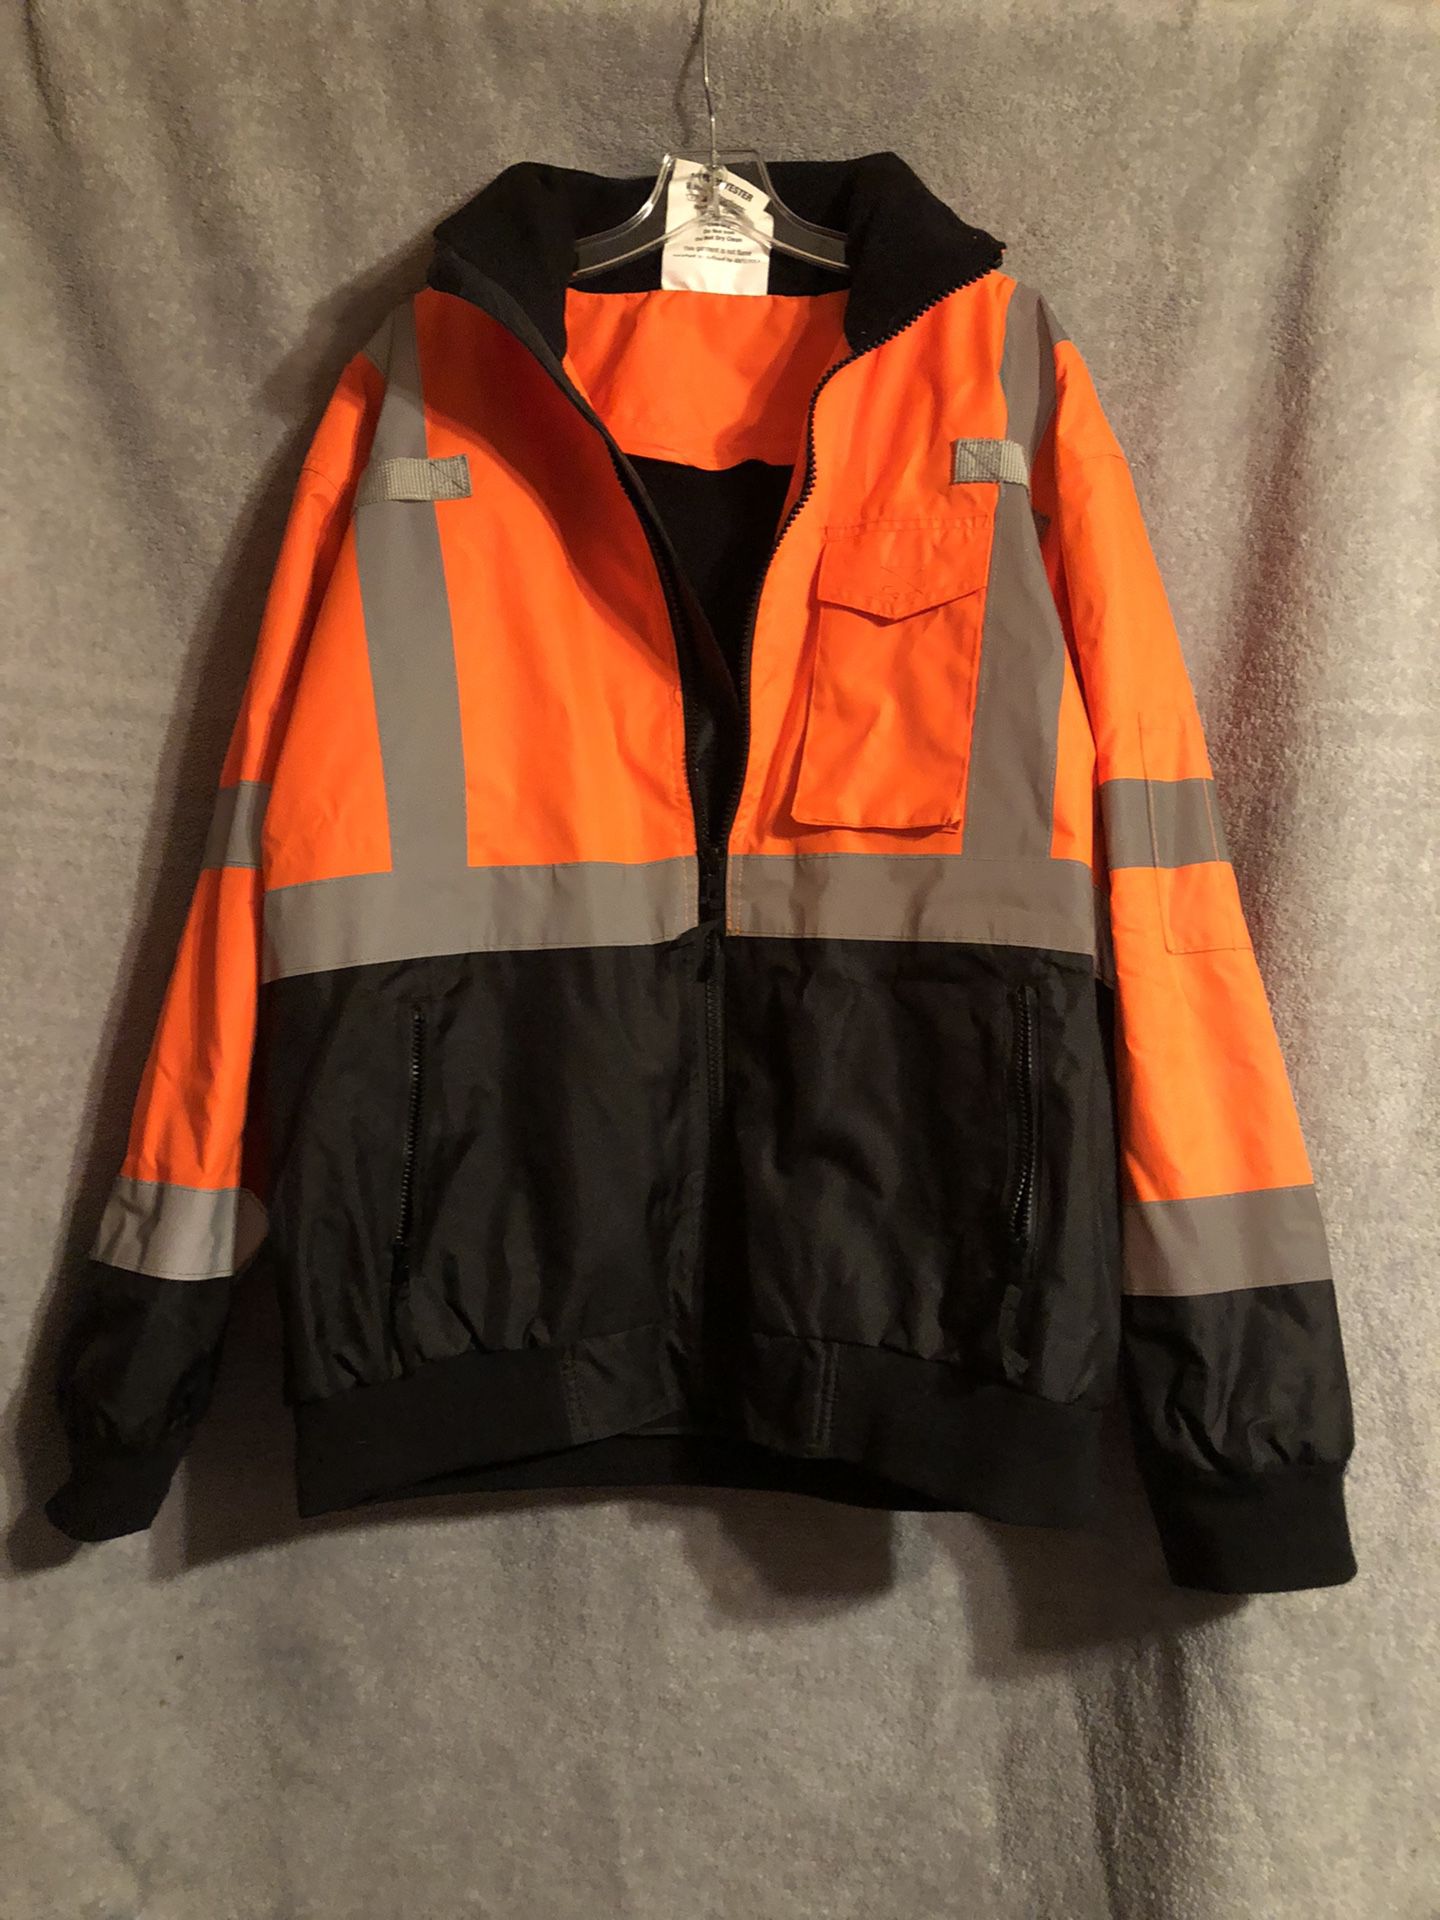 Rad Wear Safety Coat/Jacket